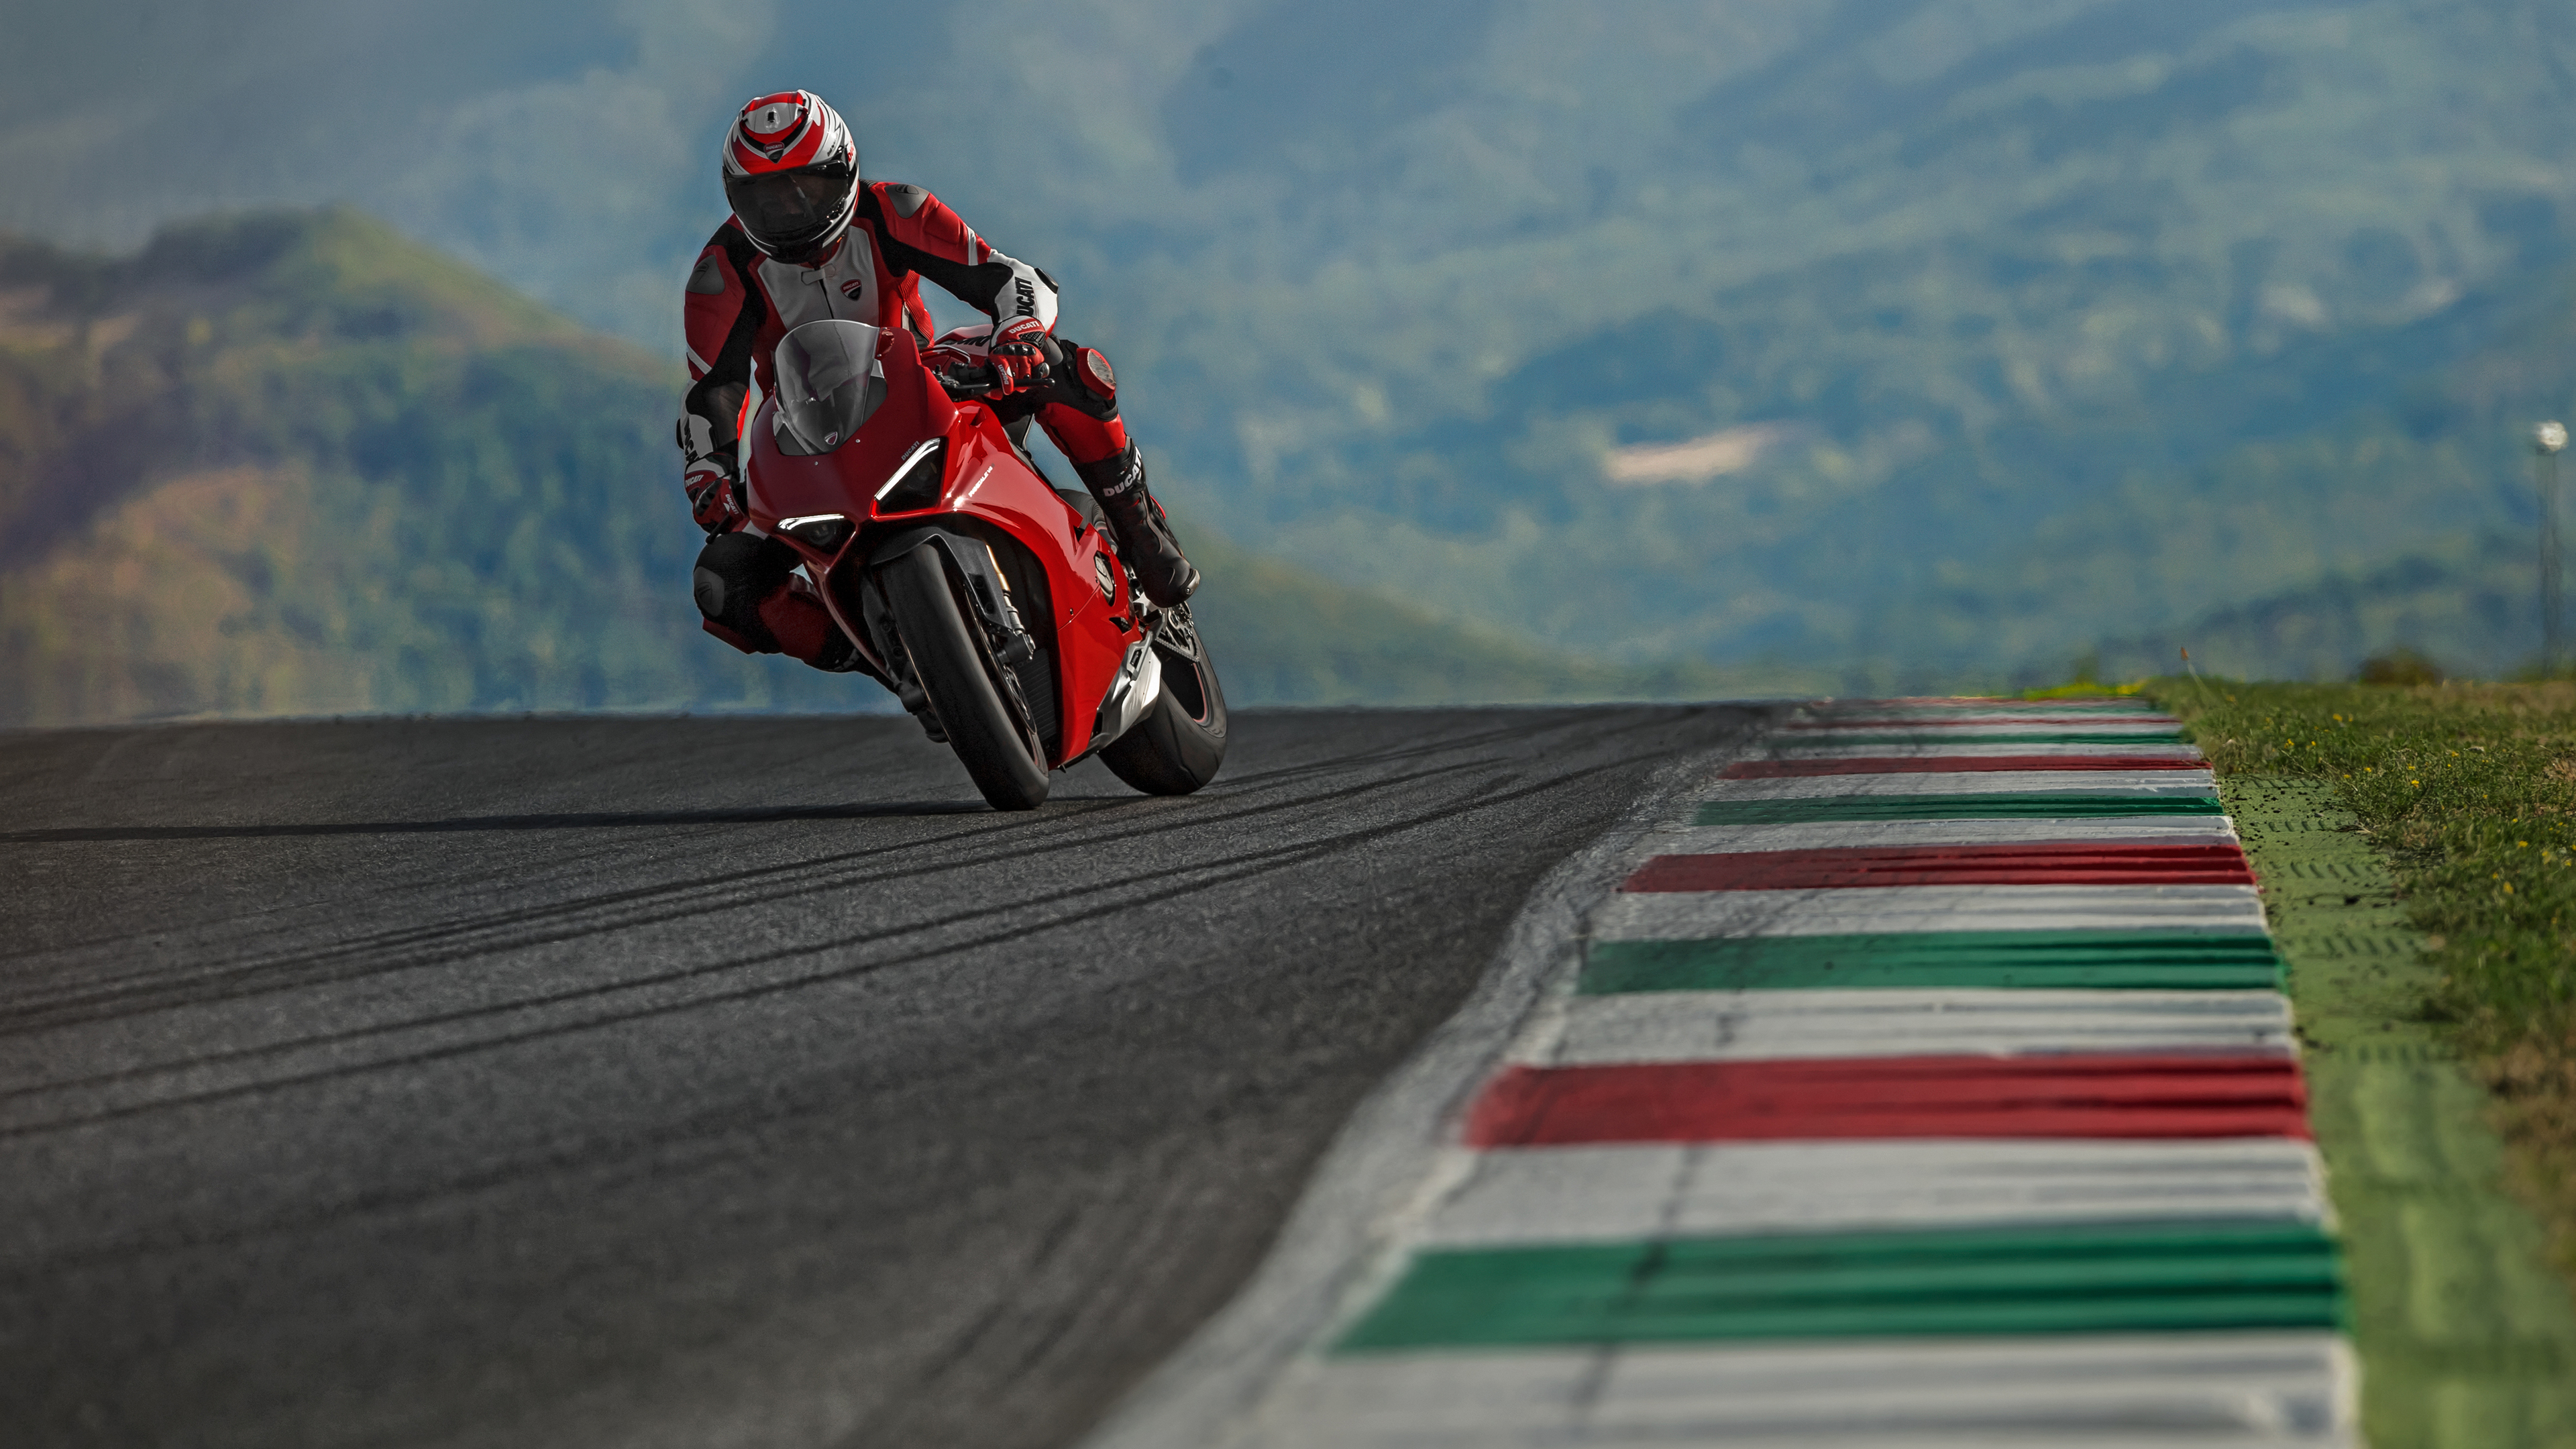 Moto de course Ducati.jpg